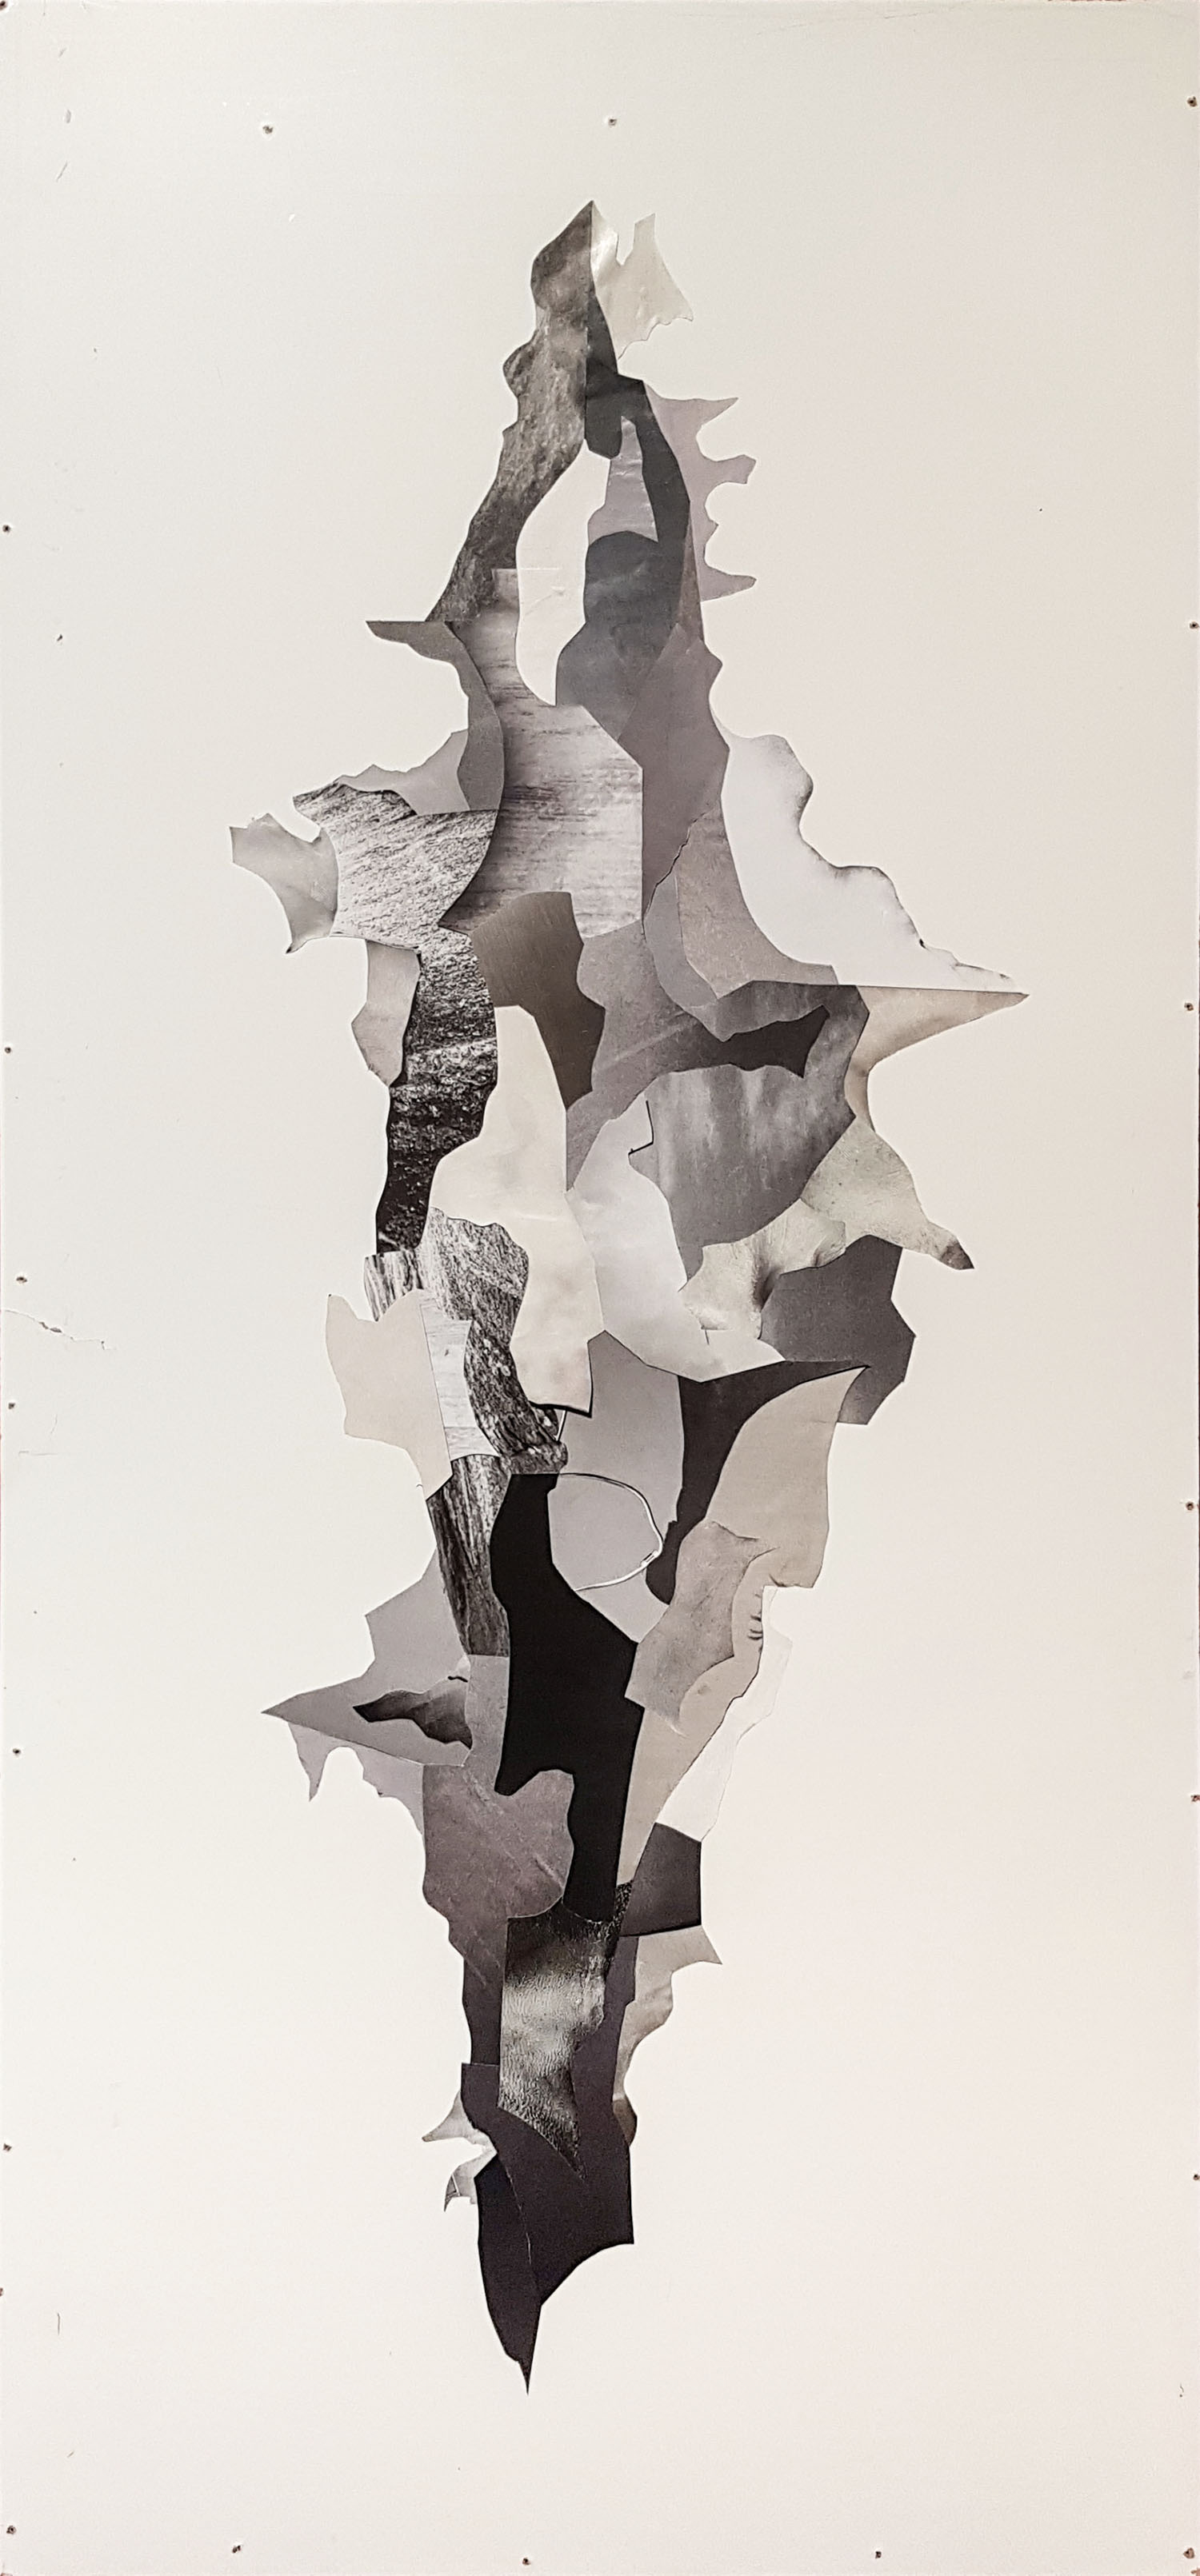 Schwarz, Weiss, Meer - abstrakte Collage Kunst von Artmuc Award Gewinner Markus Wülbern